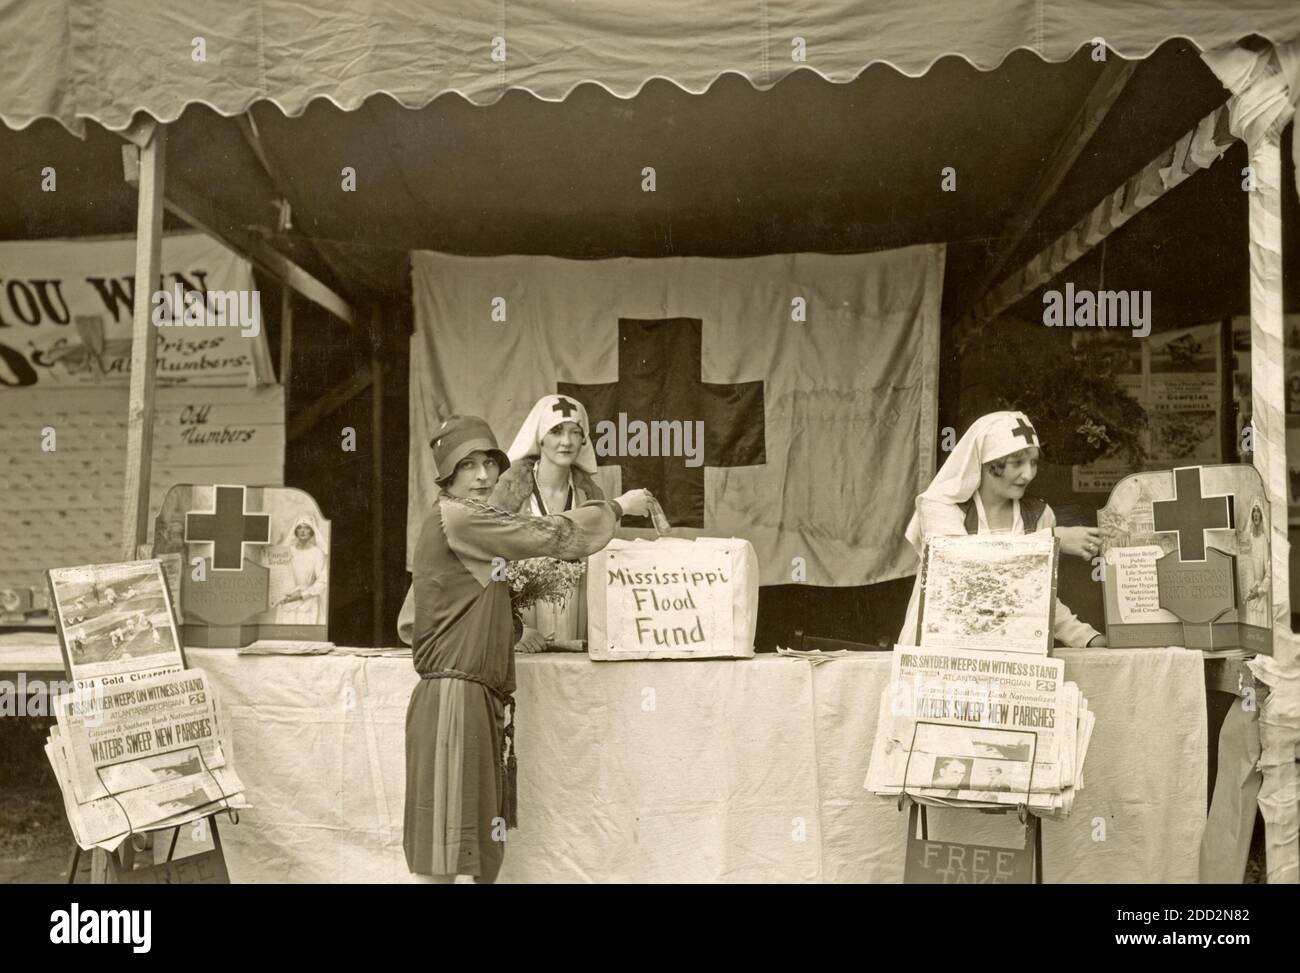 Niemand ist hungrig, ungekleidet, ungeschützt gegangen der DeKalb County Chapter Stand, um Hilfsgelder zu sammeln, war ein Zentrum des Interesses auf einer Messe in Decatur, Georgia - Foto zeigt Mitarbeiter des Roten Kreuzes an einem Stand und eine Frau, die eine Spende an Mississippi Flood Fund, 1927 macht Stockfoto